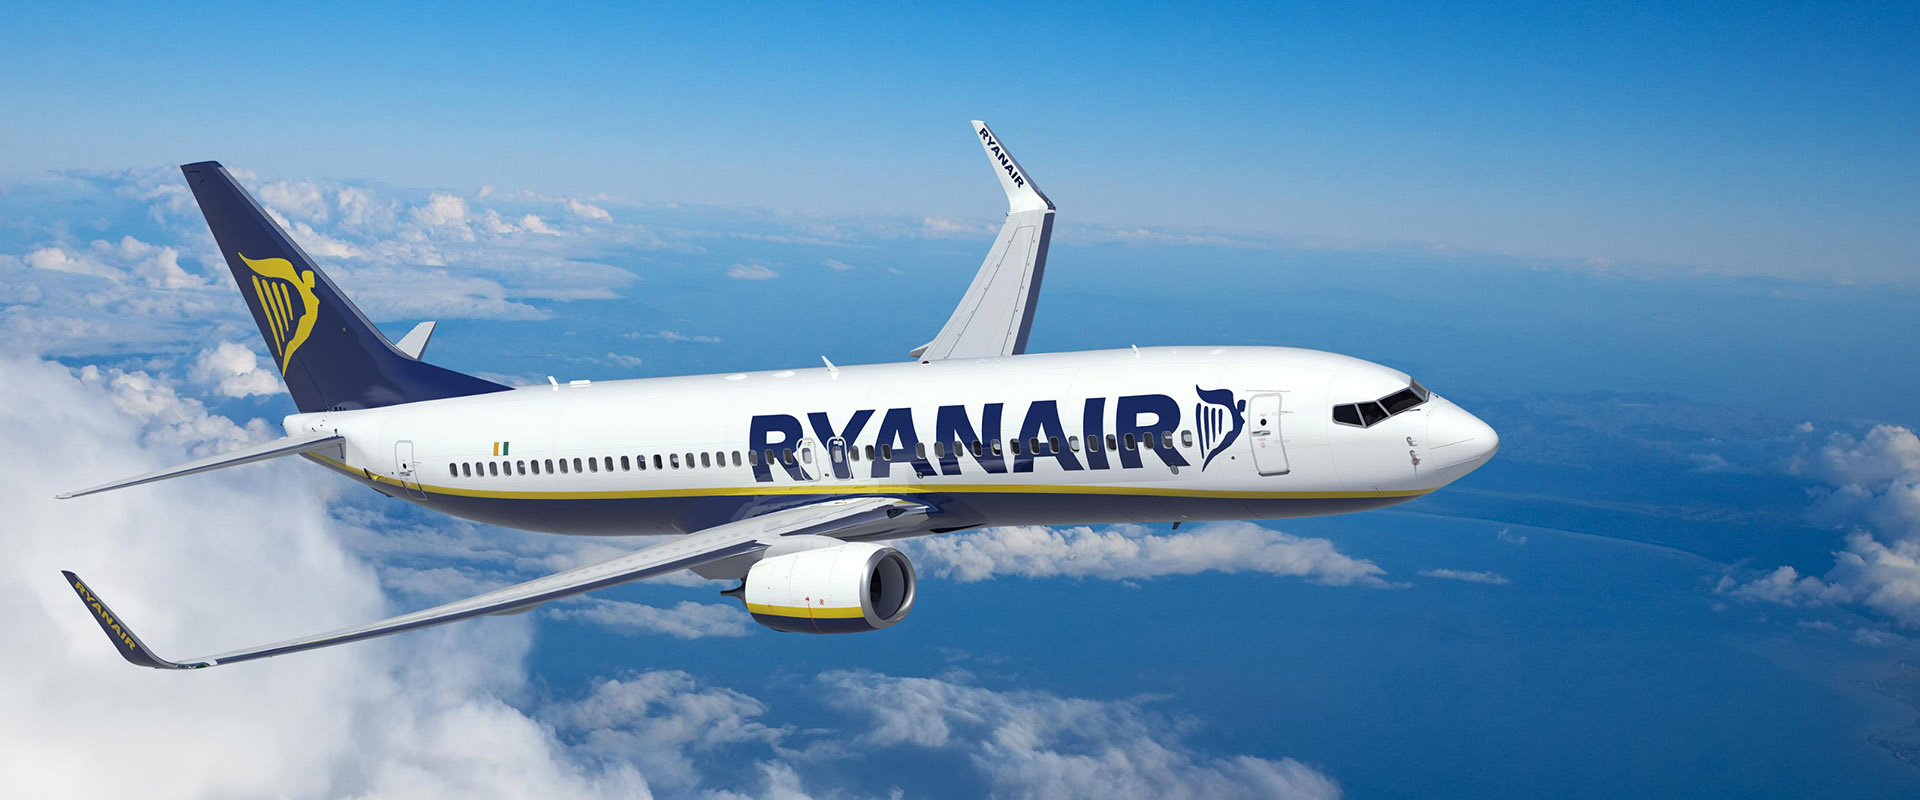 Η Ryanair Ανακοινωνει Νεο Δρομολογιο Απο Τη Κερκυρα Προς Τη Μπολονια